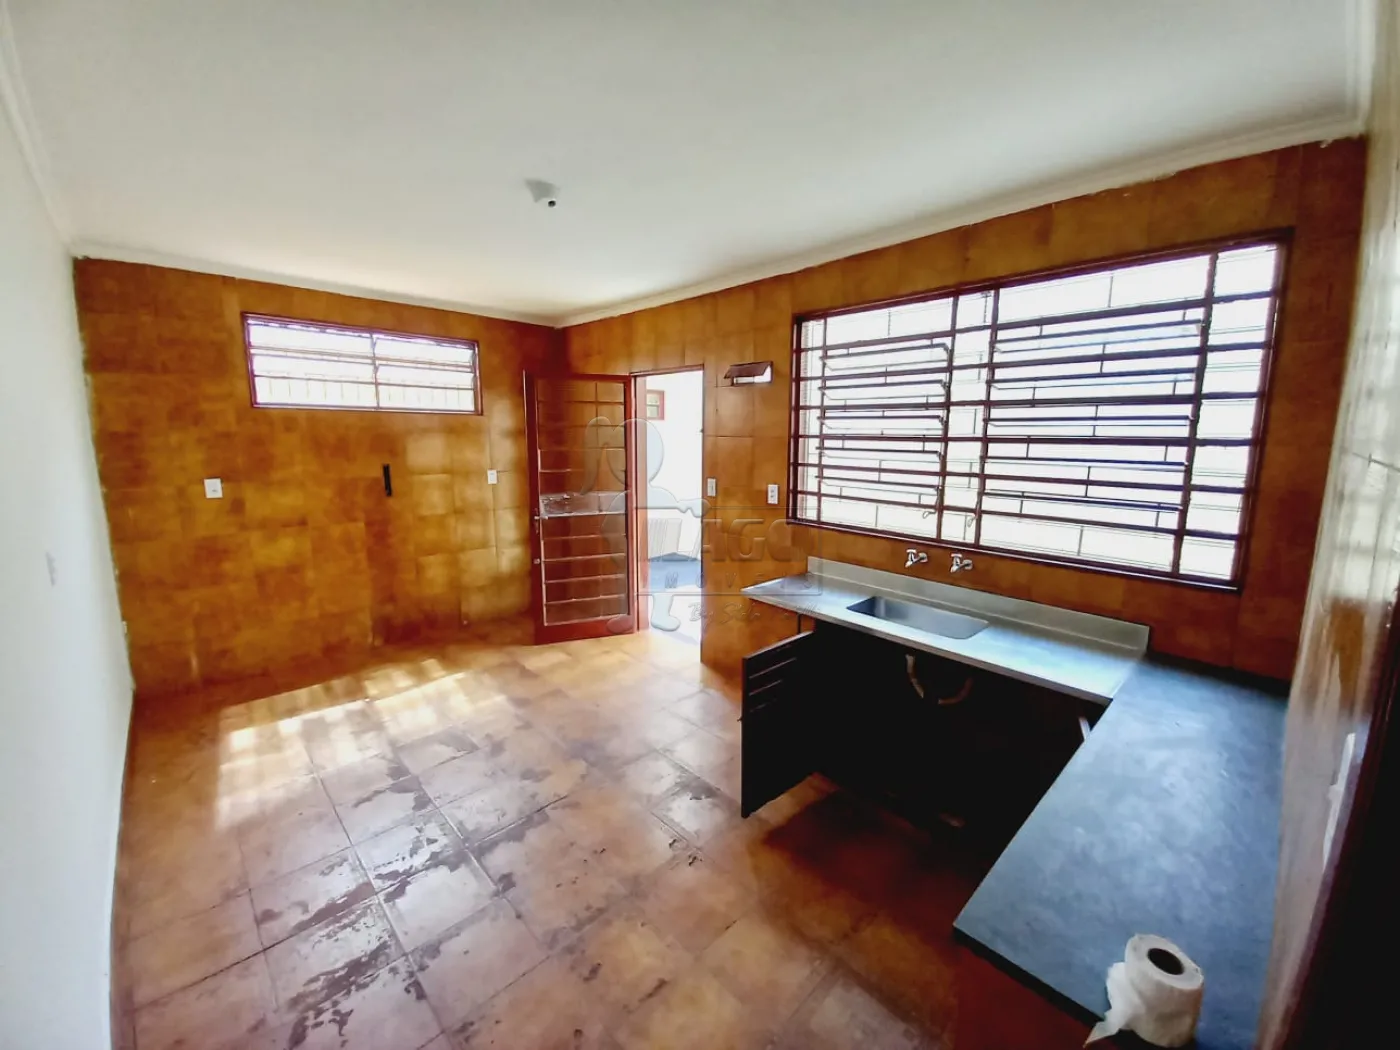 Comprar Casa / Padrão em Ribeirão Preto R$ 295.000,00 - Foto 6